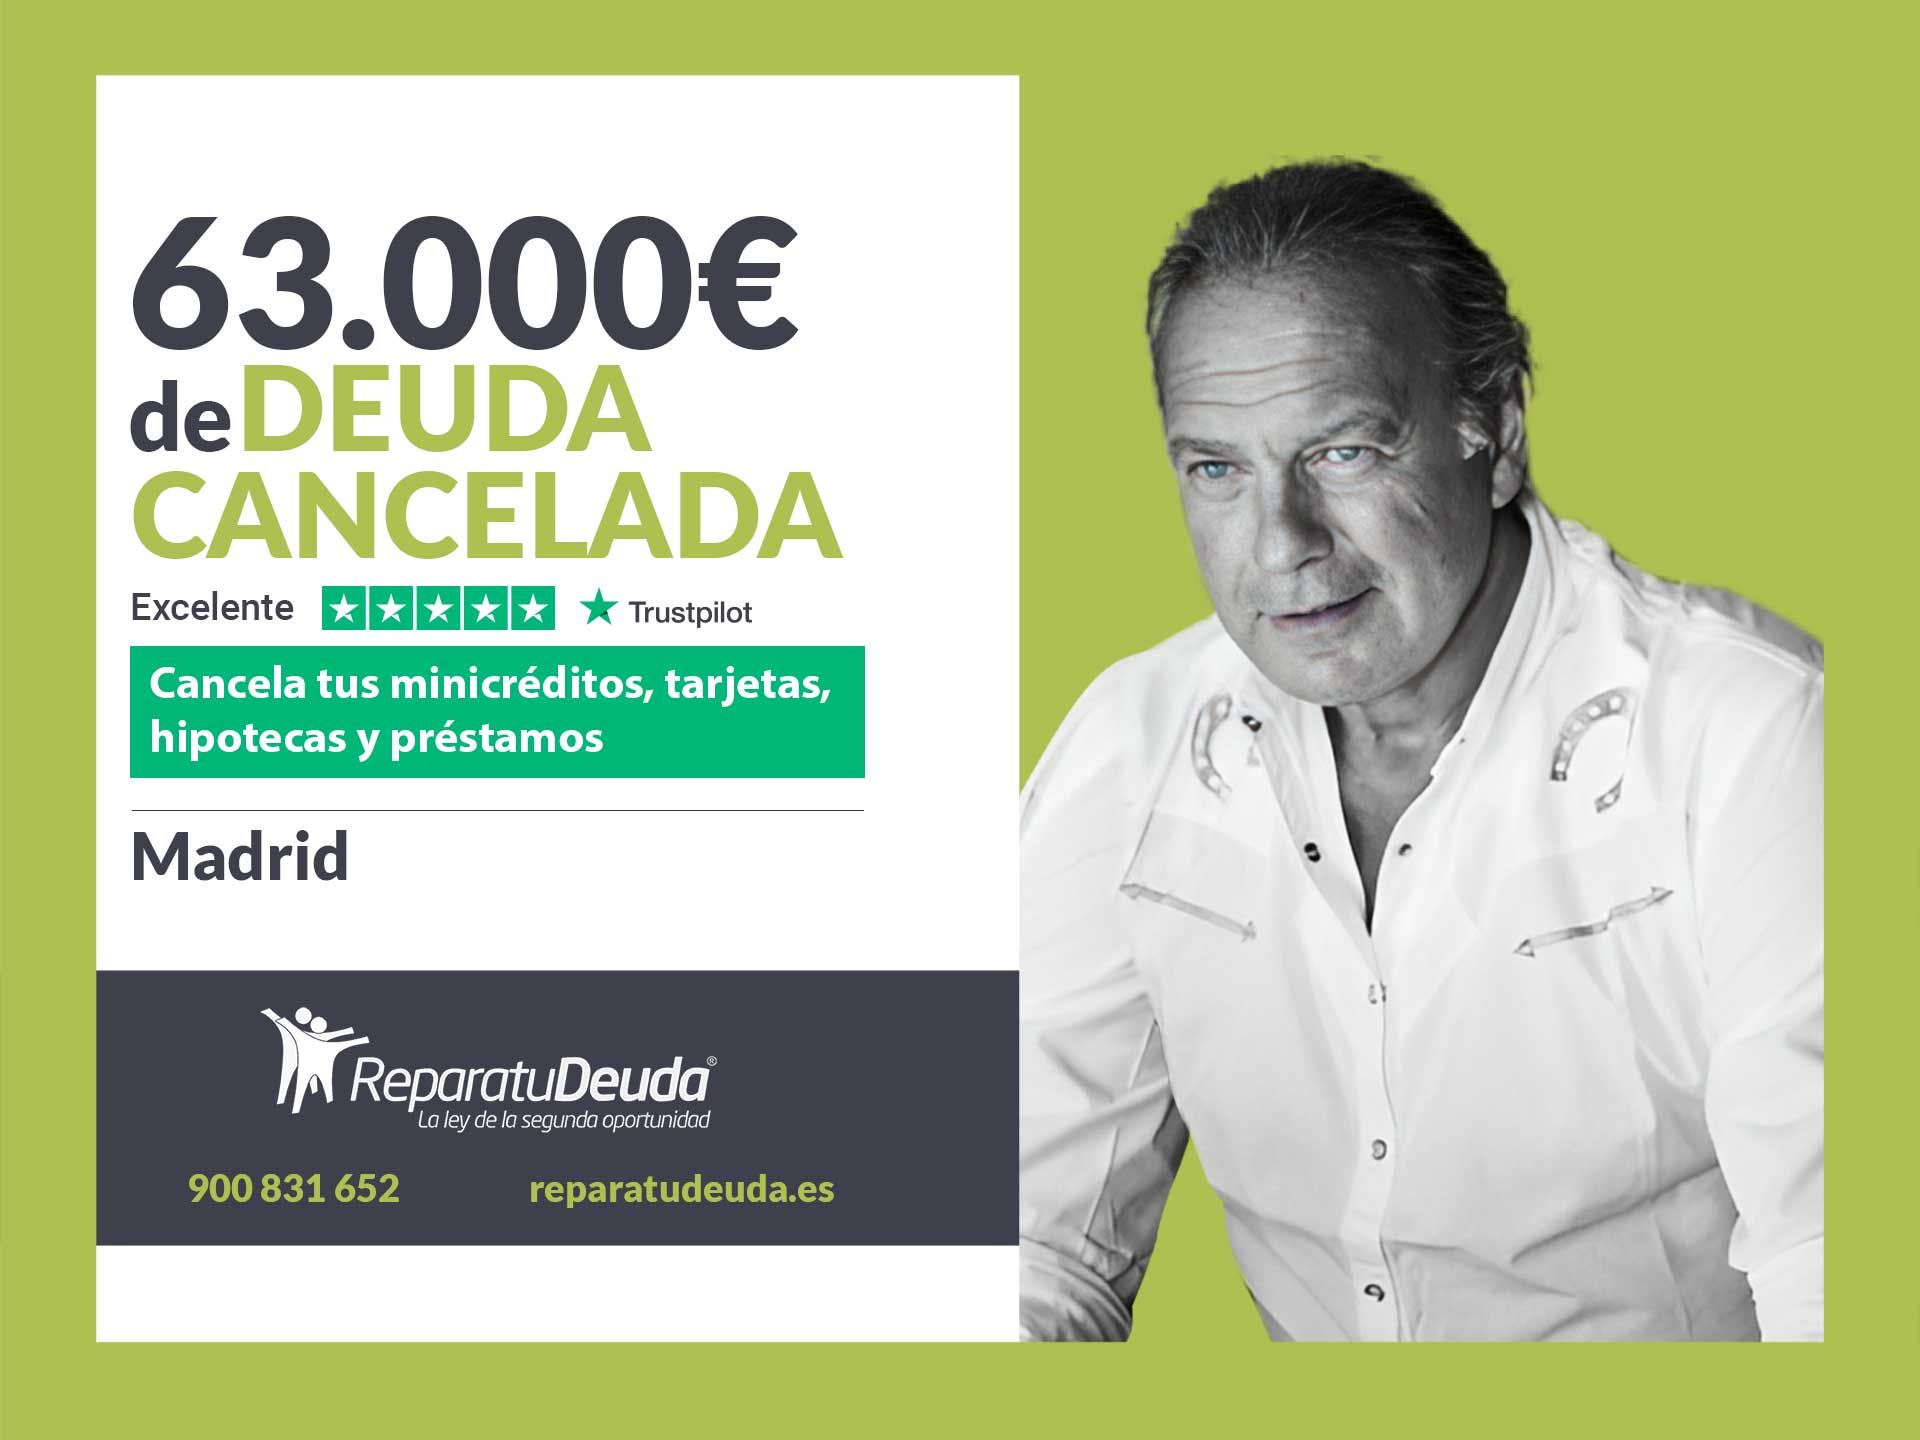 Repara tu Deuda Abogados cancela 63.000? en Madrid con la Ley de Segunda Oportunidad